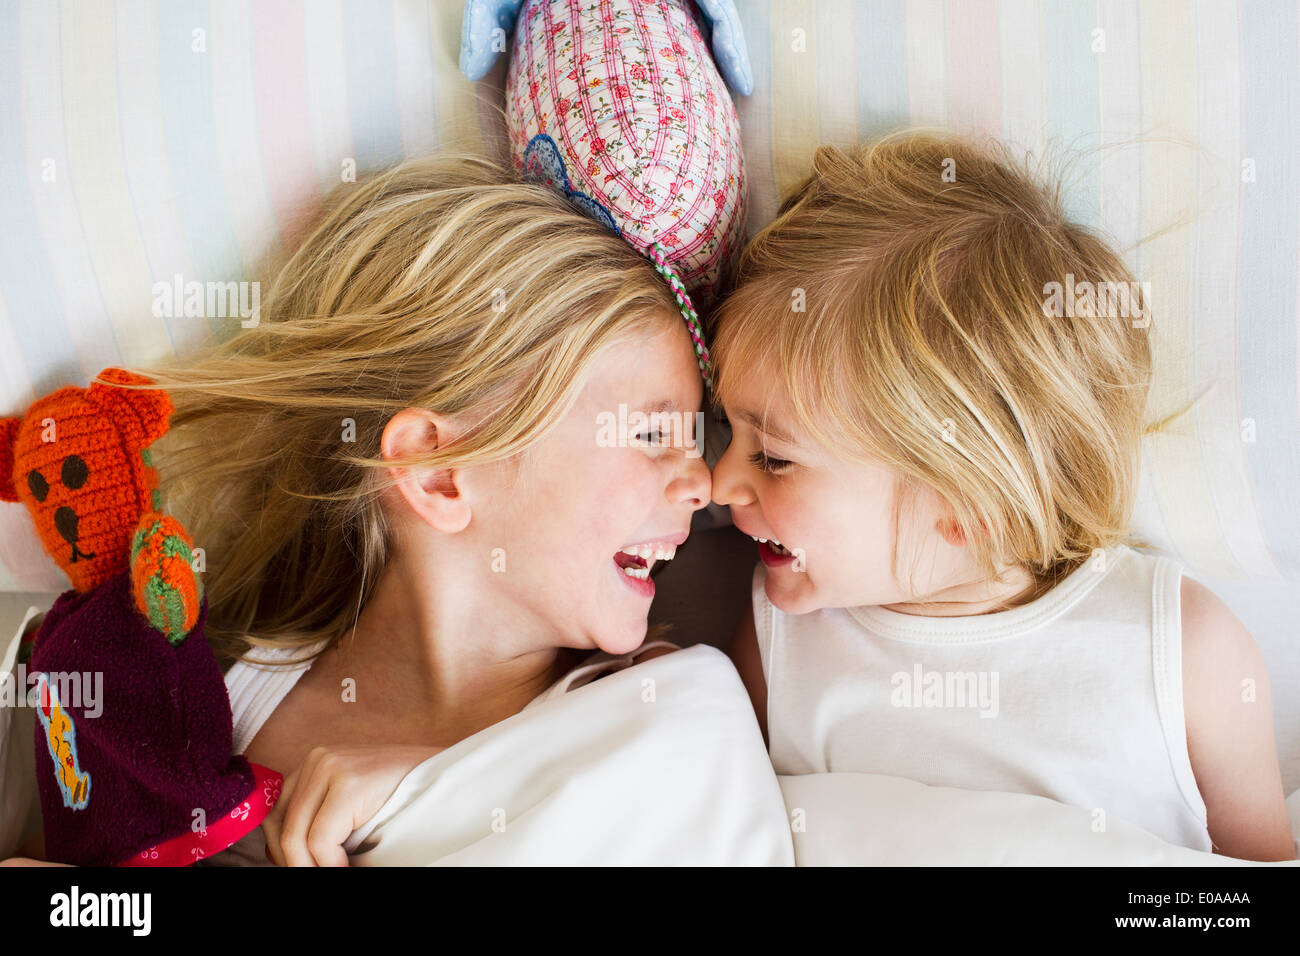 Retrato de dos jóvenes hermanas tumbado en la cama, cara a cara. Foto de stock